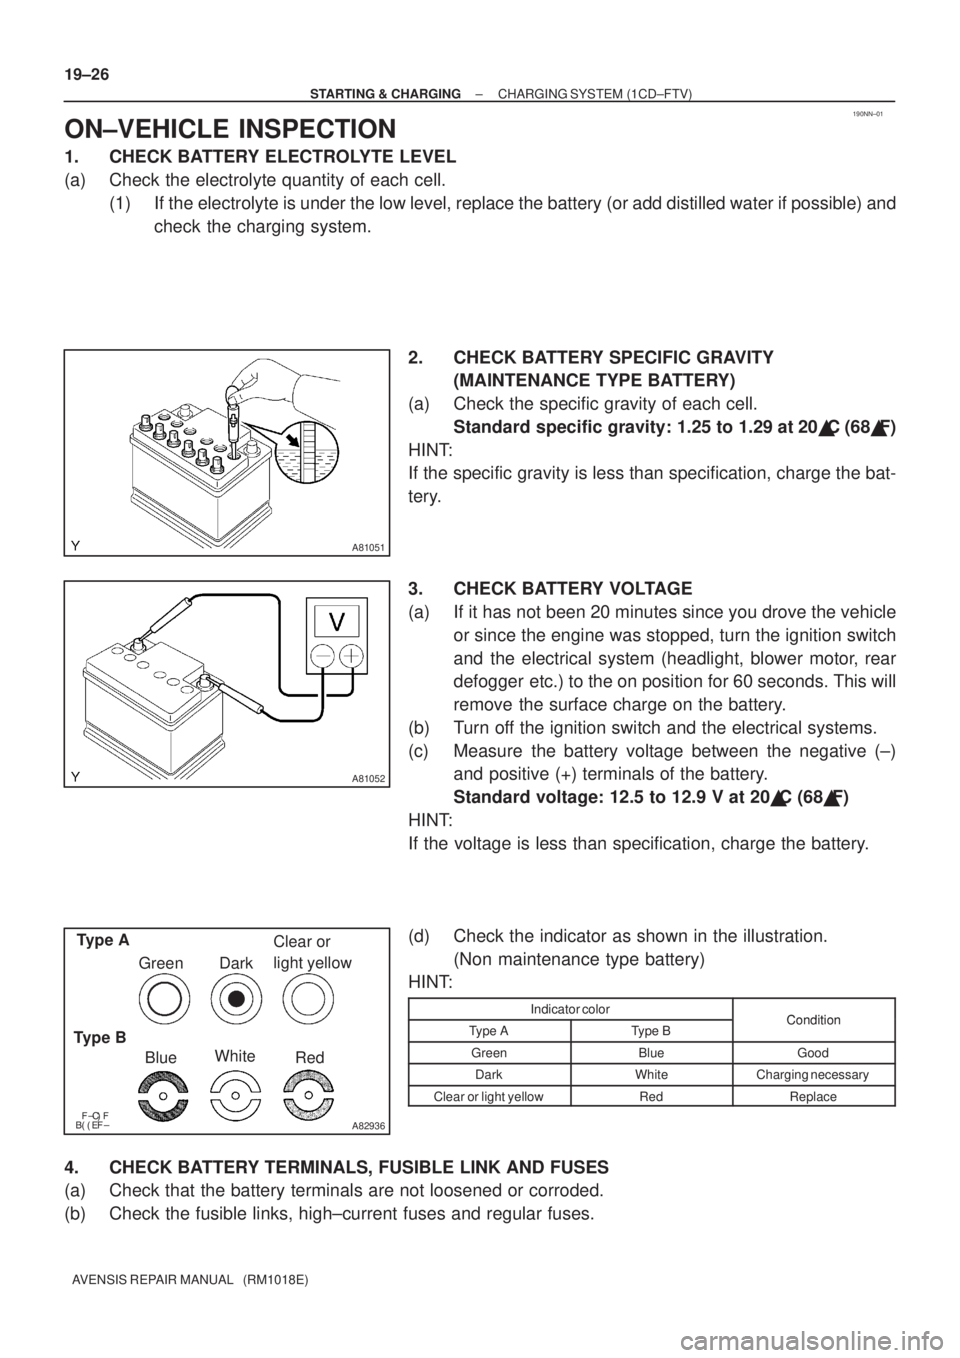 TOYOTA AVENSIS 2003  Service Repair Manual 190NN±01
A81051
A81052
\bA82936
Type A
Type B BlueWhite
Red
Green Dark
Clear or 
light yellow
19±26
±
STARTING & CHARGING CHARGING SYSTEM (1CD±FTV)
AVENSIS REPAIR MANUAL   (RM1018E)
ON�